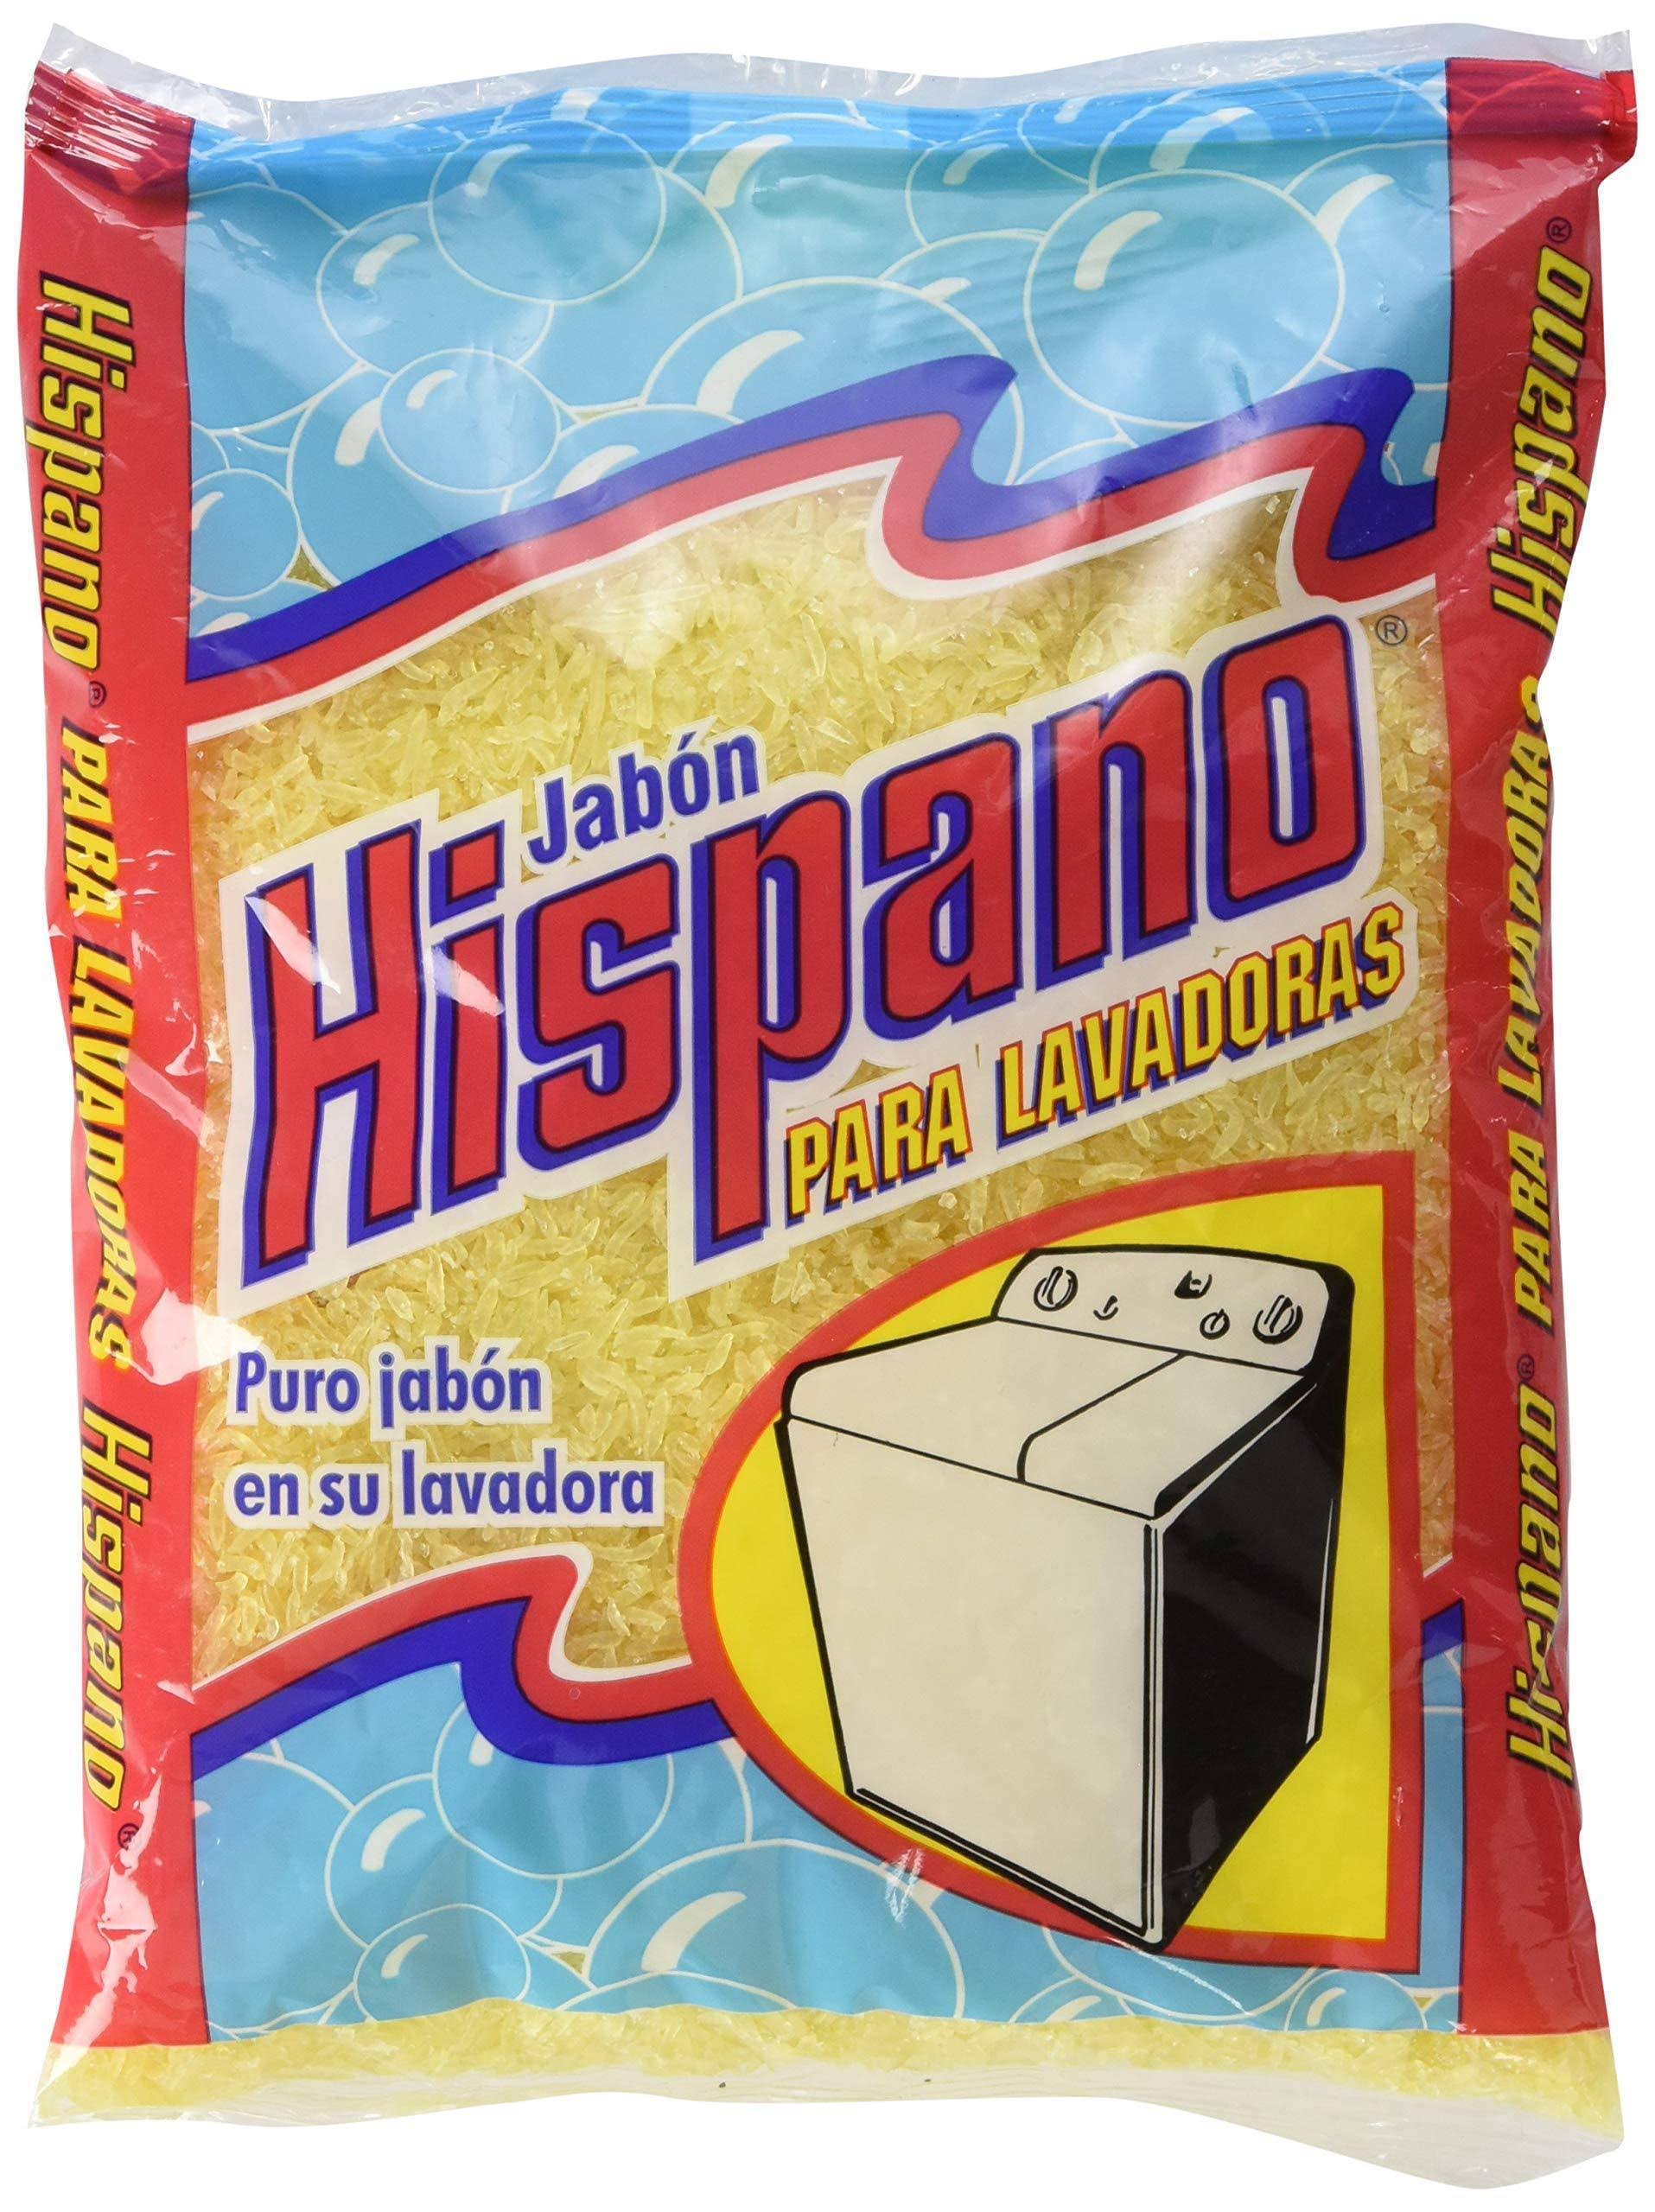 Jabon Hispano Laundry Detergent Soap - Shredded, 14oz